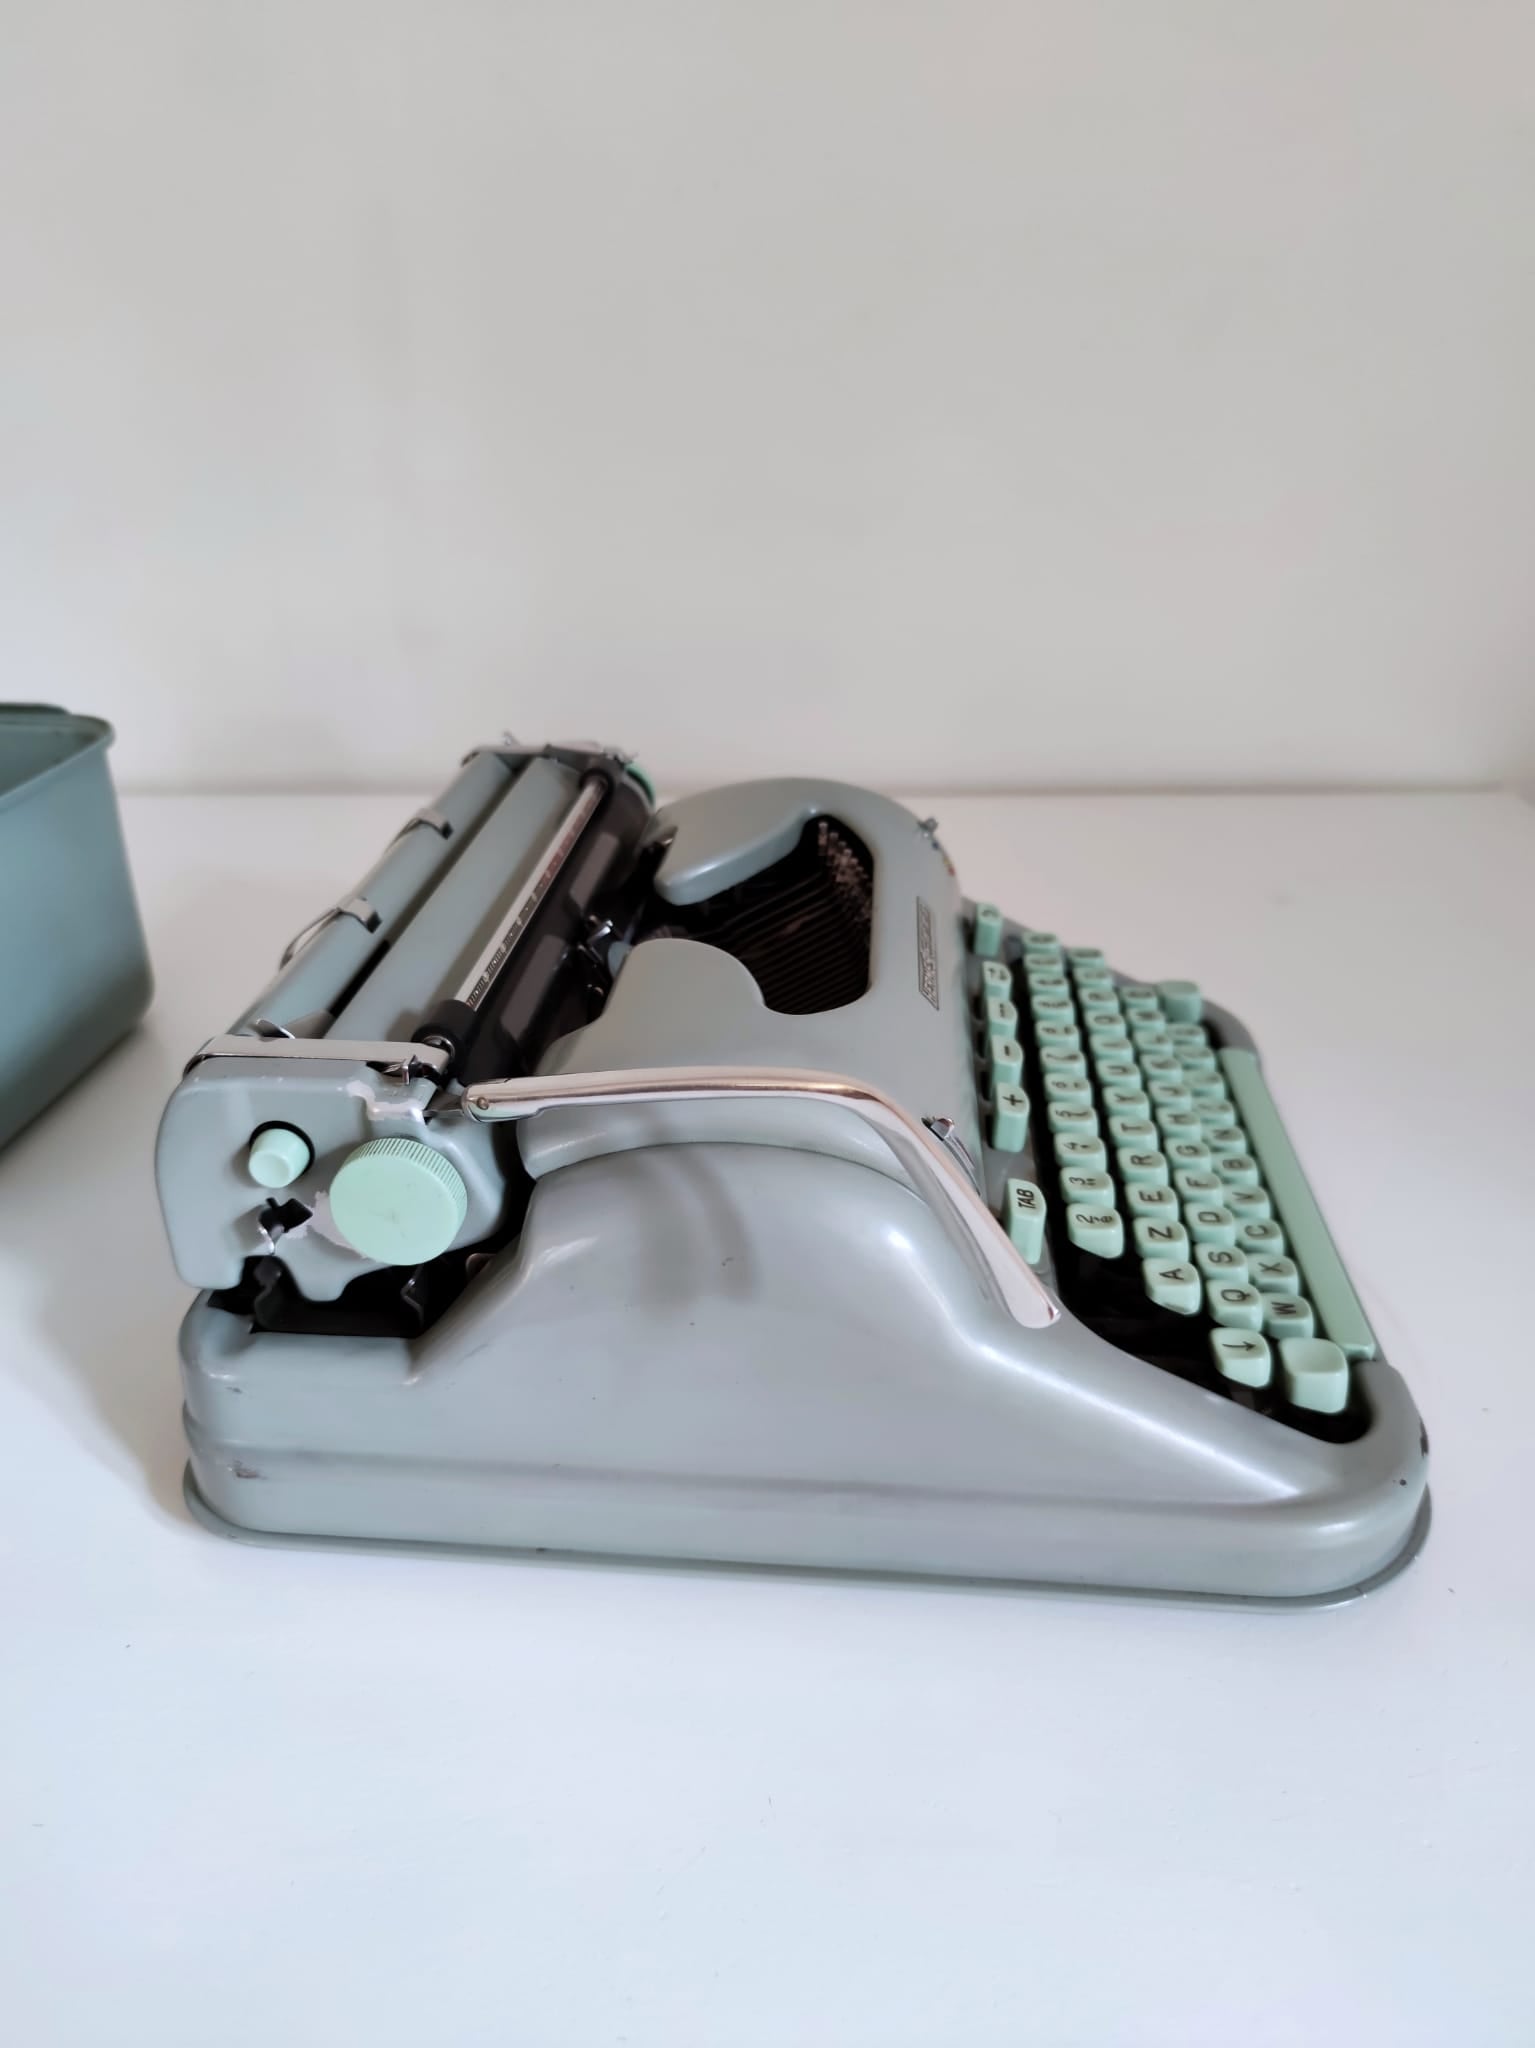 Machine à écrire Hermes 3000